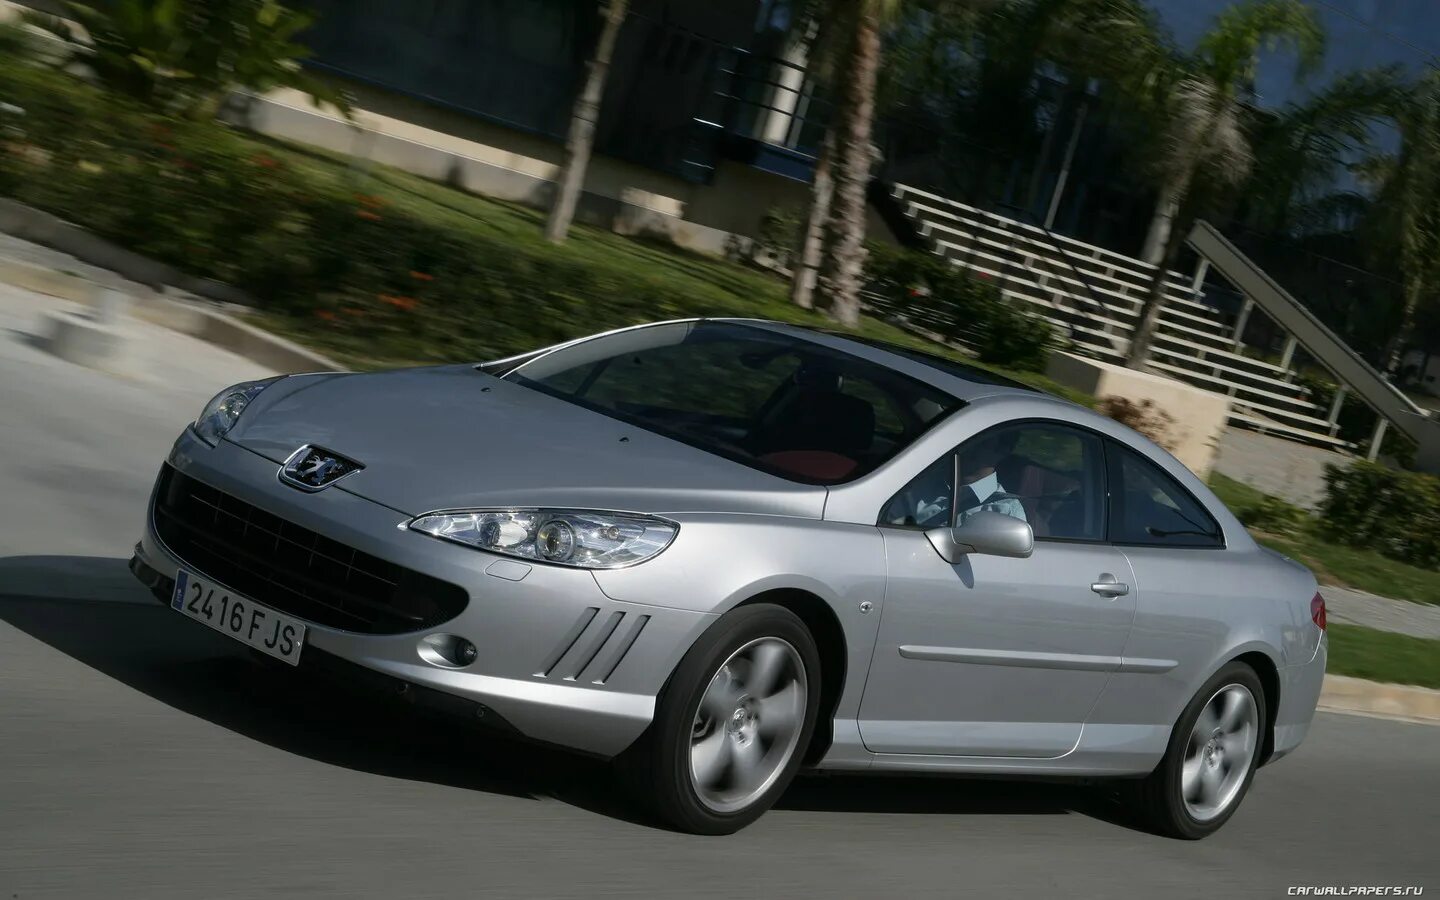 Купить пежо в красноярске. Peugeot 407 Coupe 2007. Peugeot 407 Coupe White. Peugeot 407 Coupe Full. Пежо 407 купе 2007.